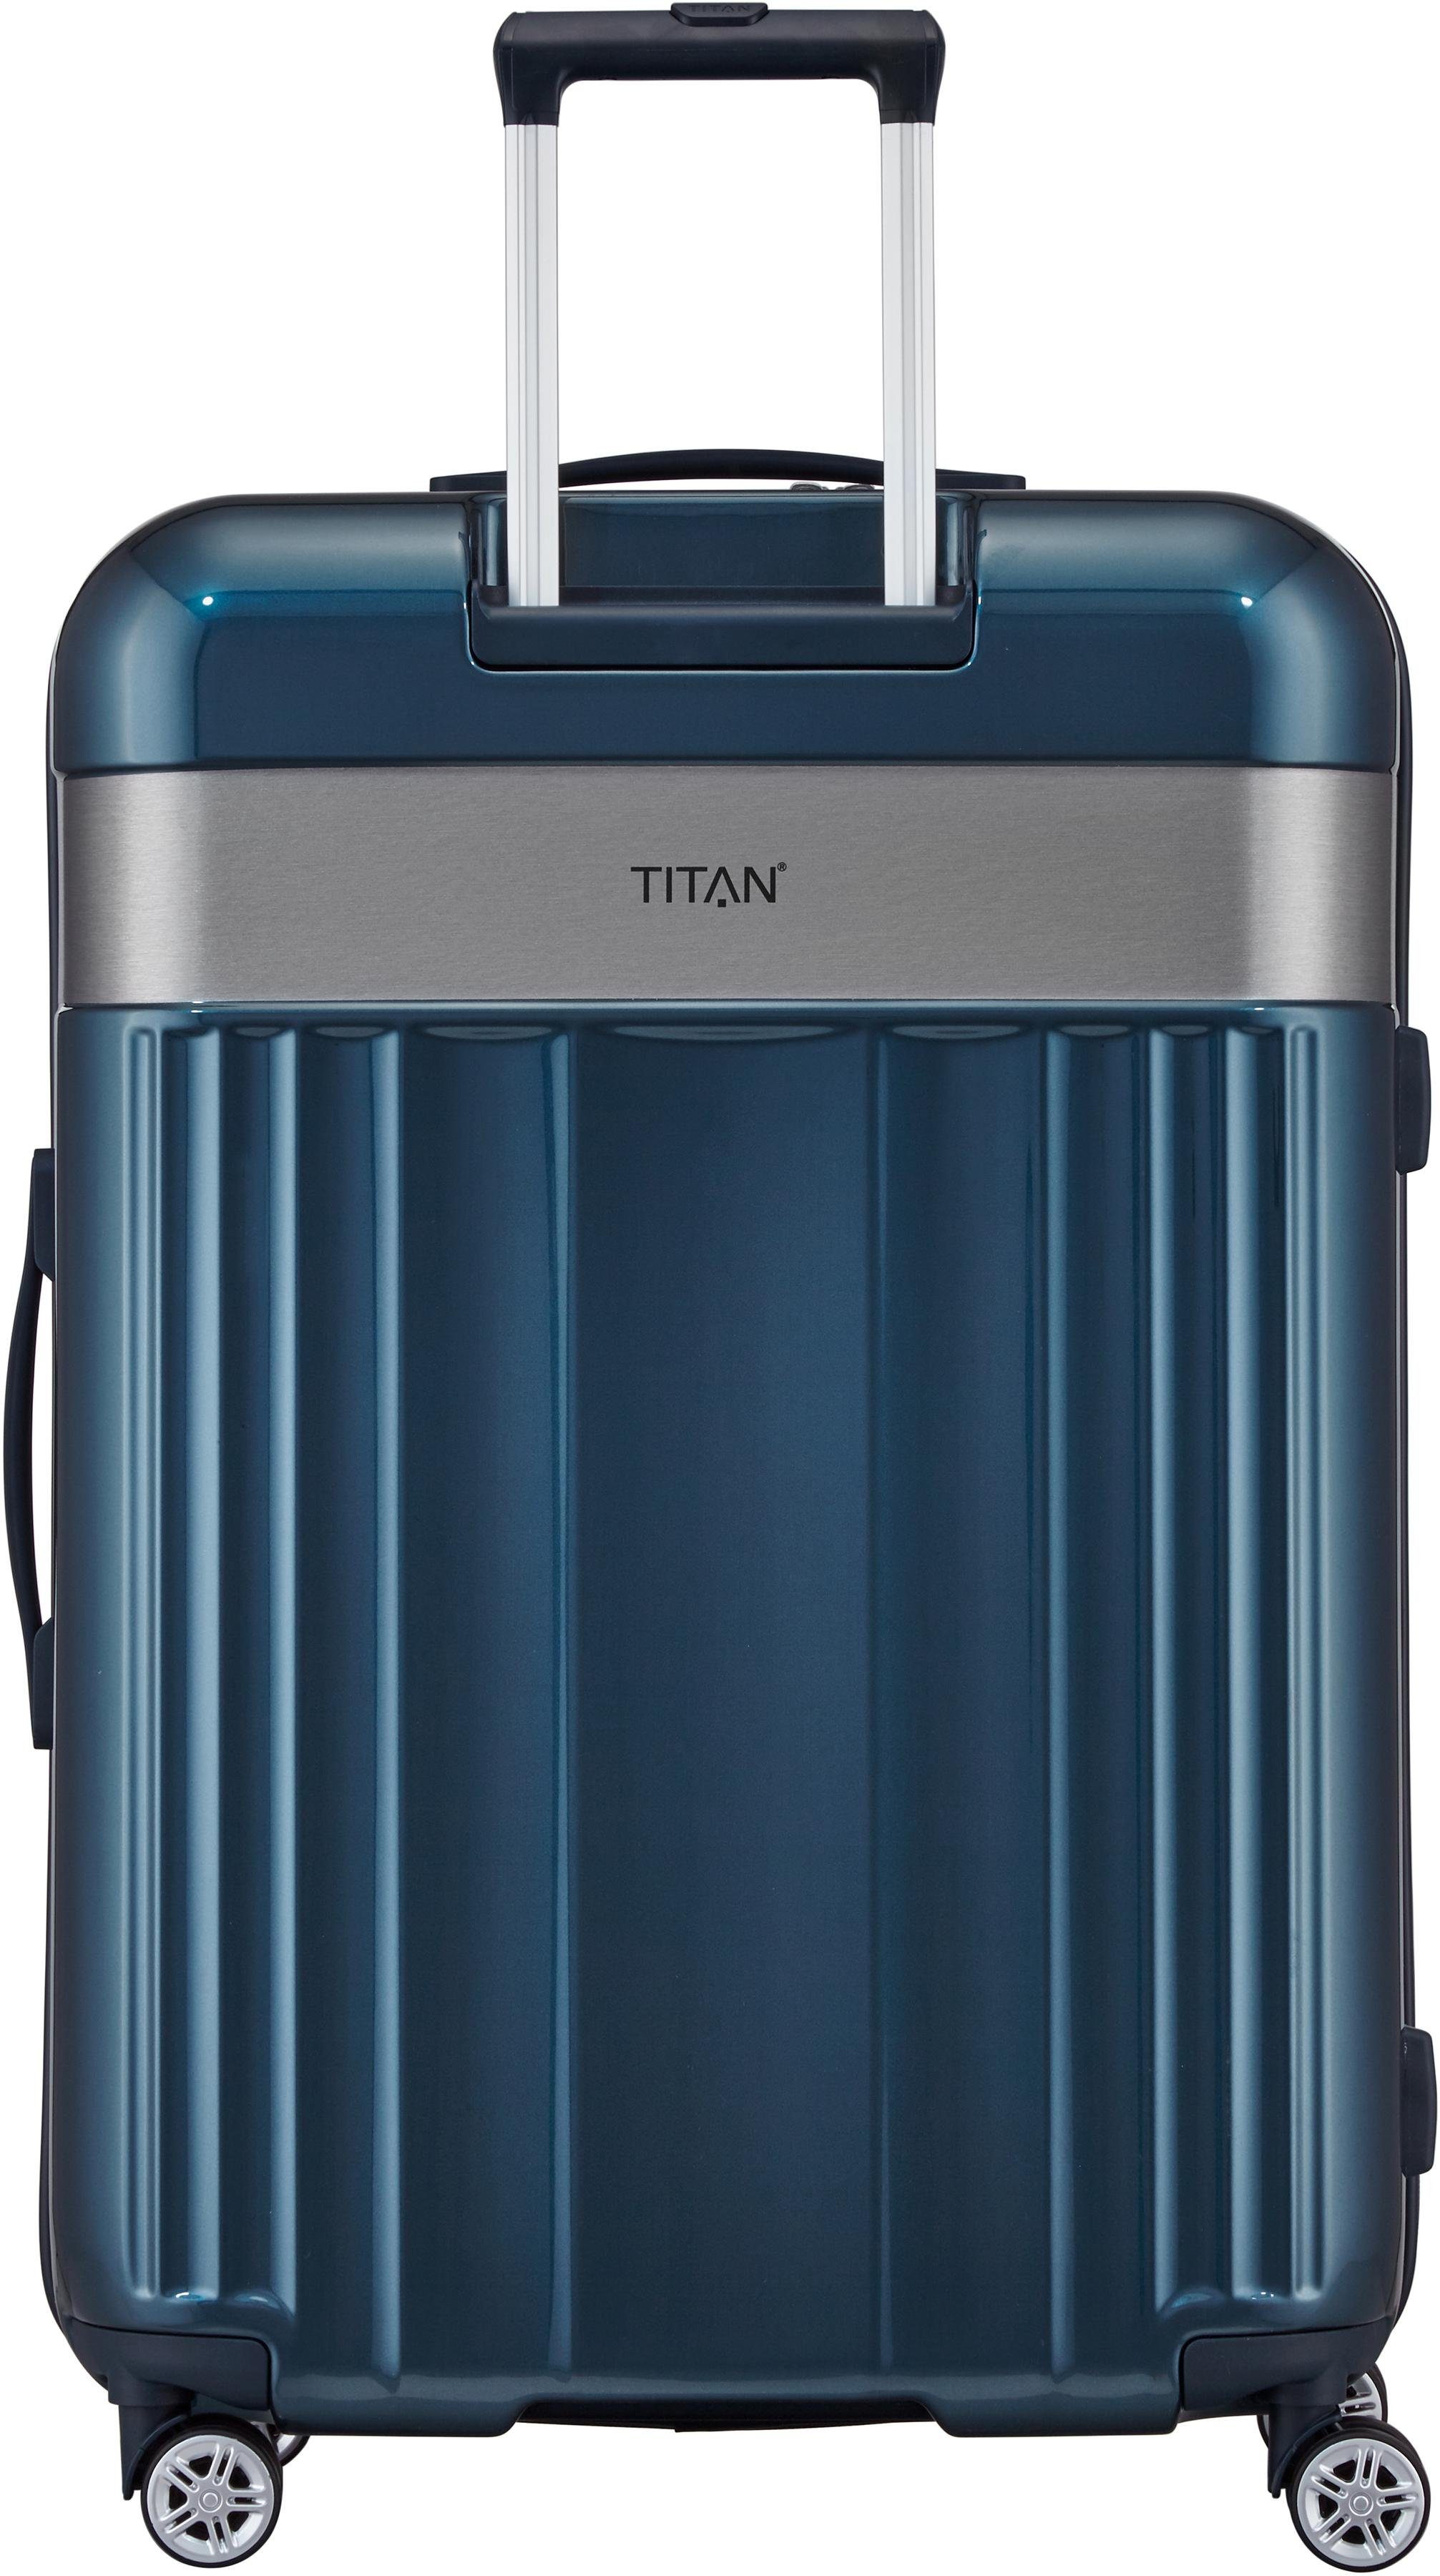 Titan Hartschalenkoffer online kaufen | OTTO